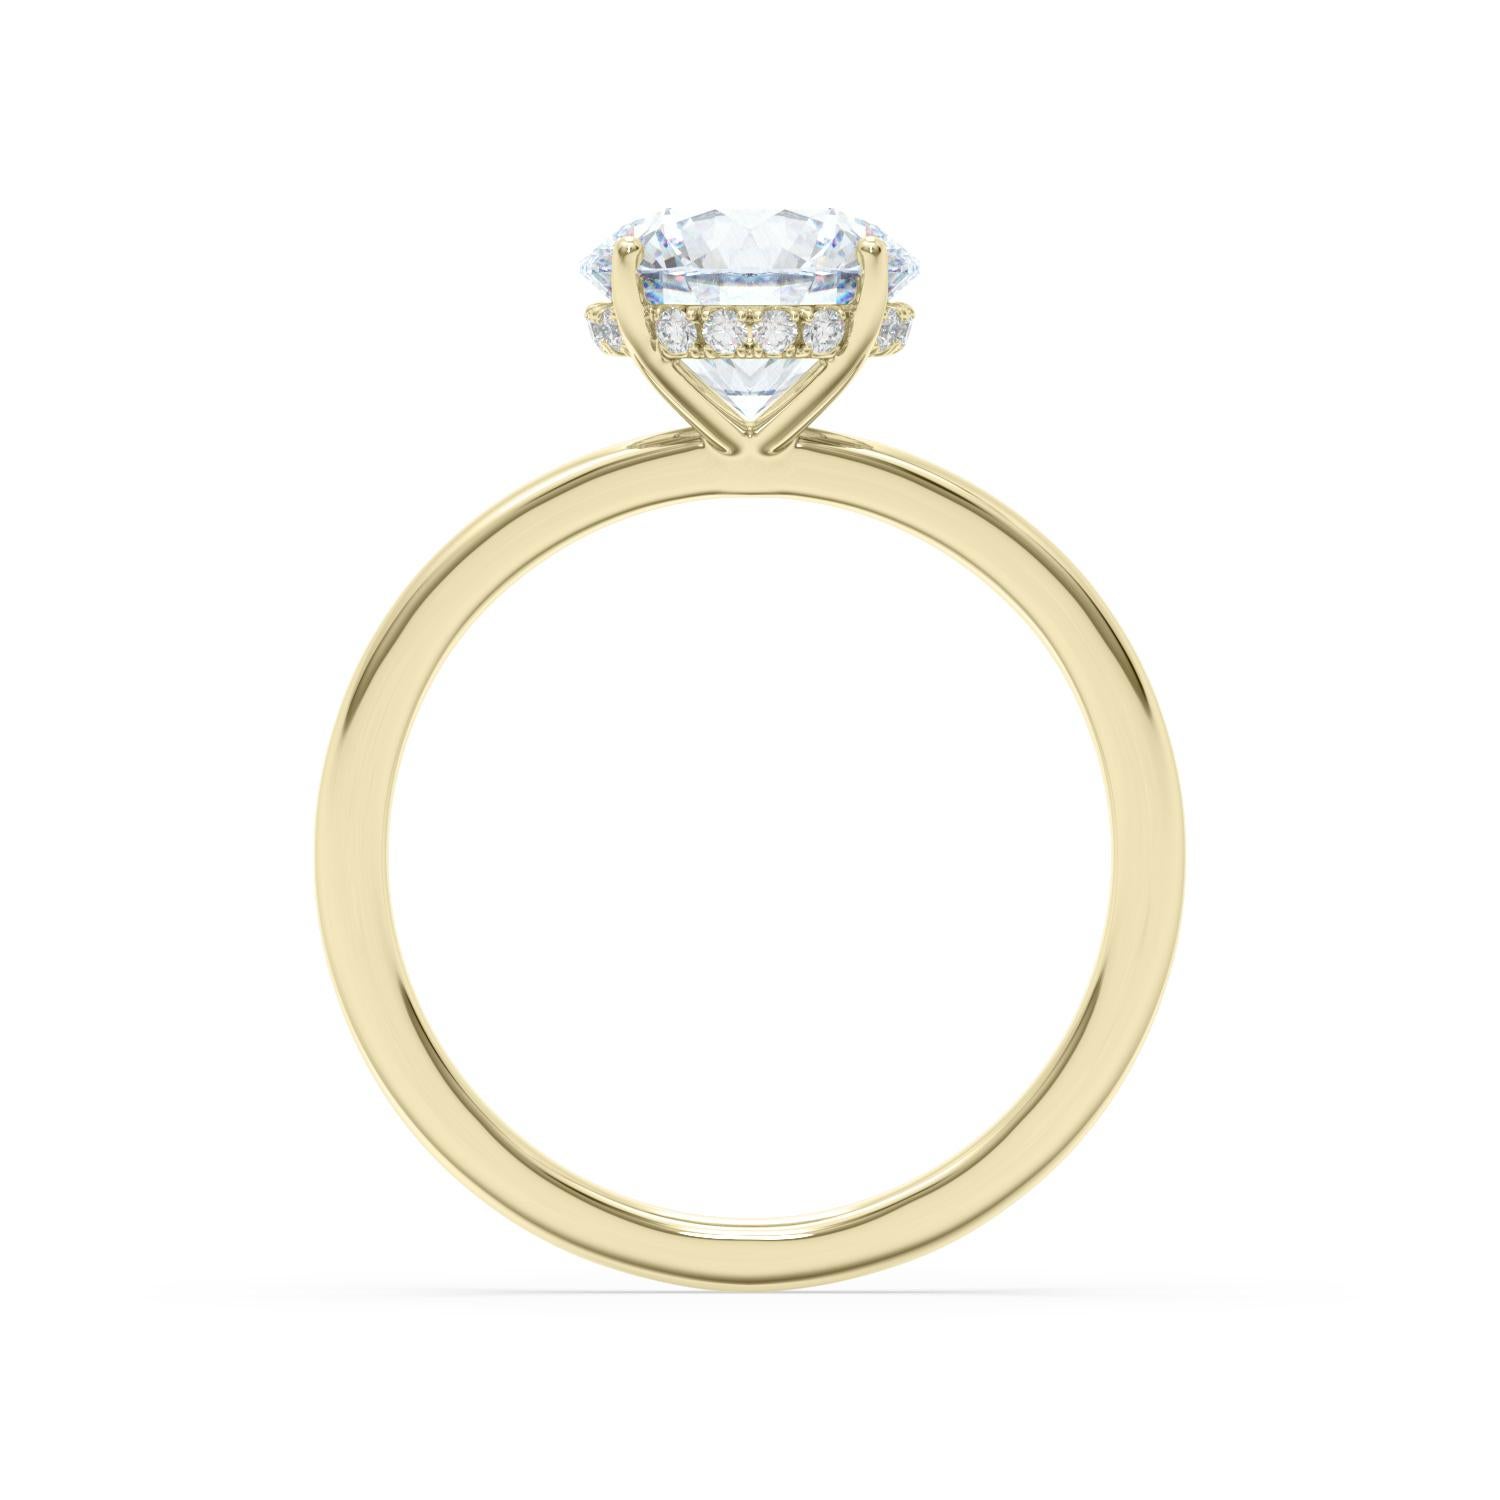 2 carat diamond ring price uk